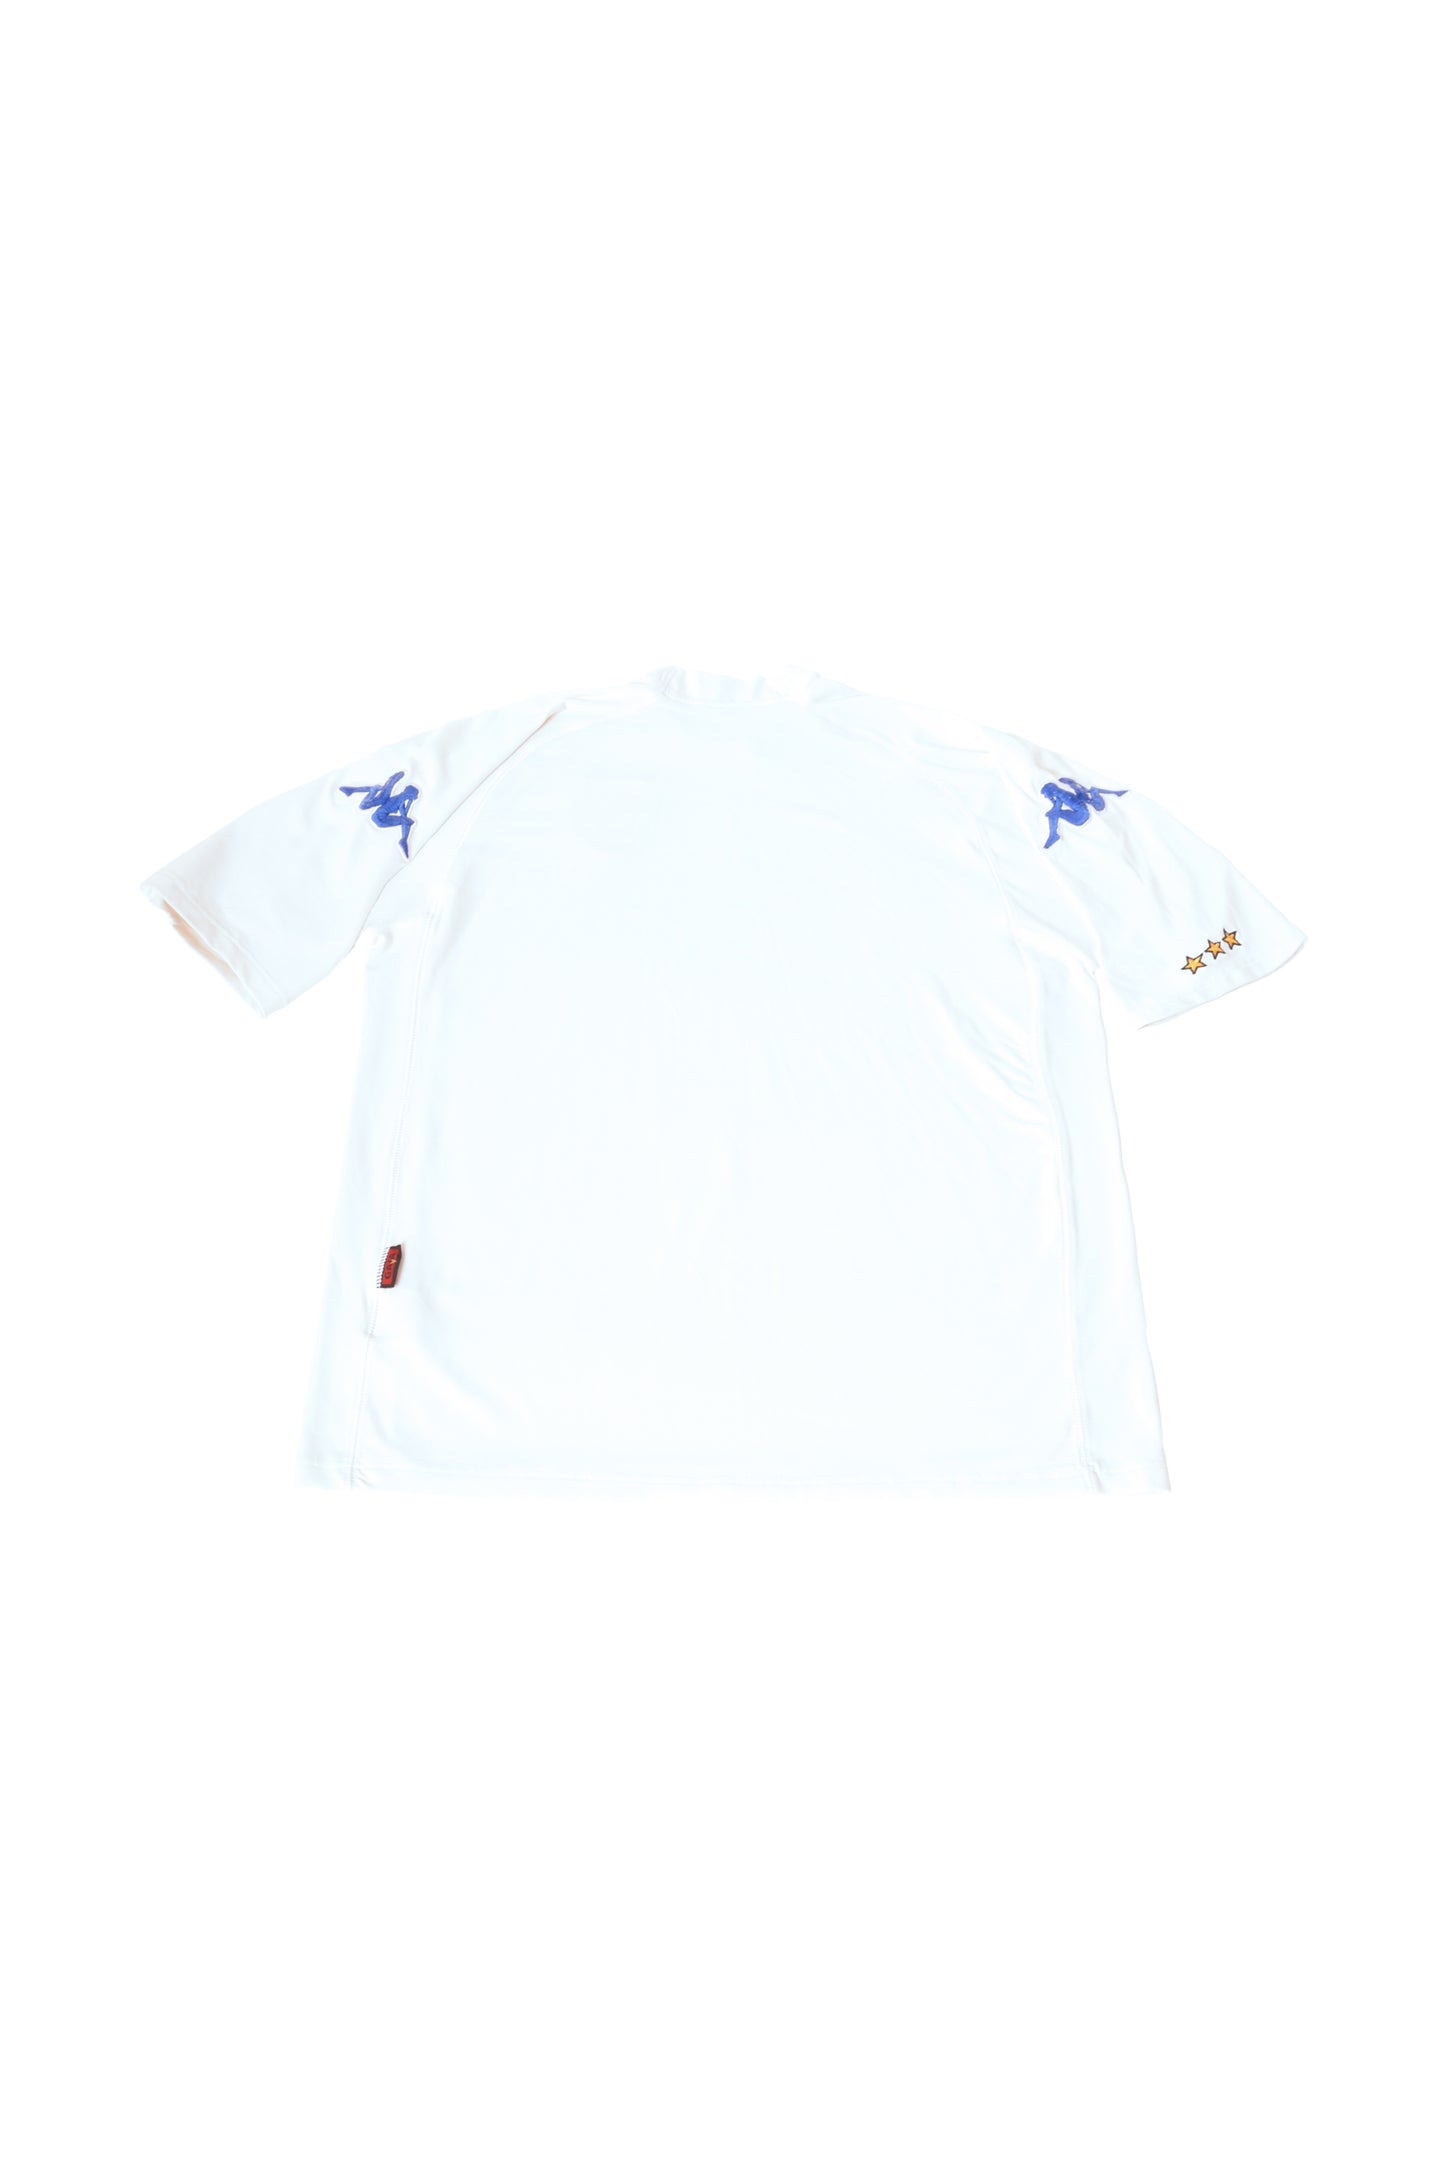 Kappa Italy Italia 2000-2001 Away Football Shirt Made in Italy Size L White Euro 2000